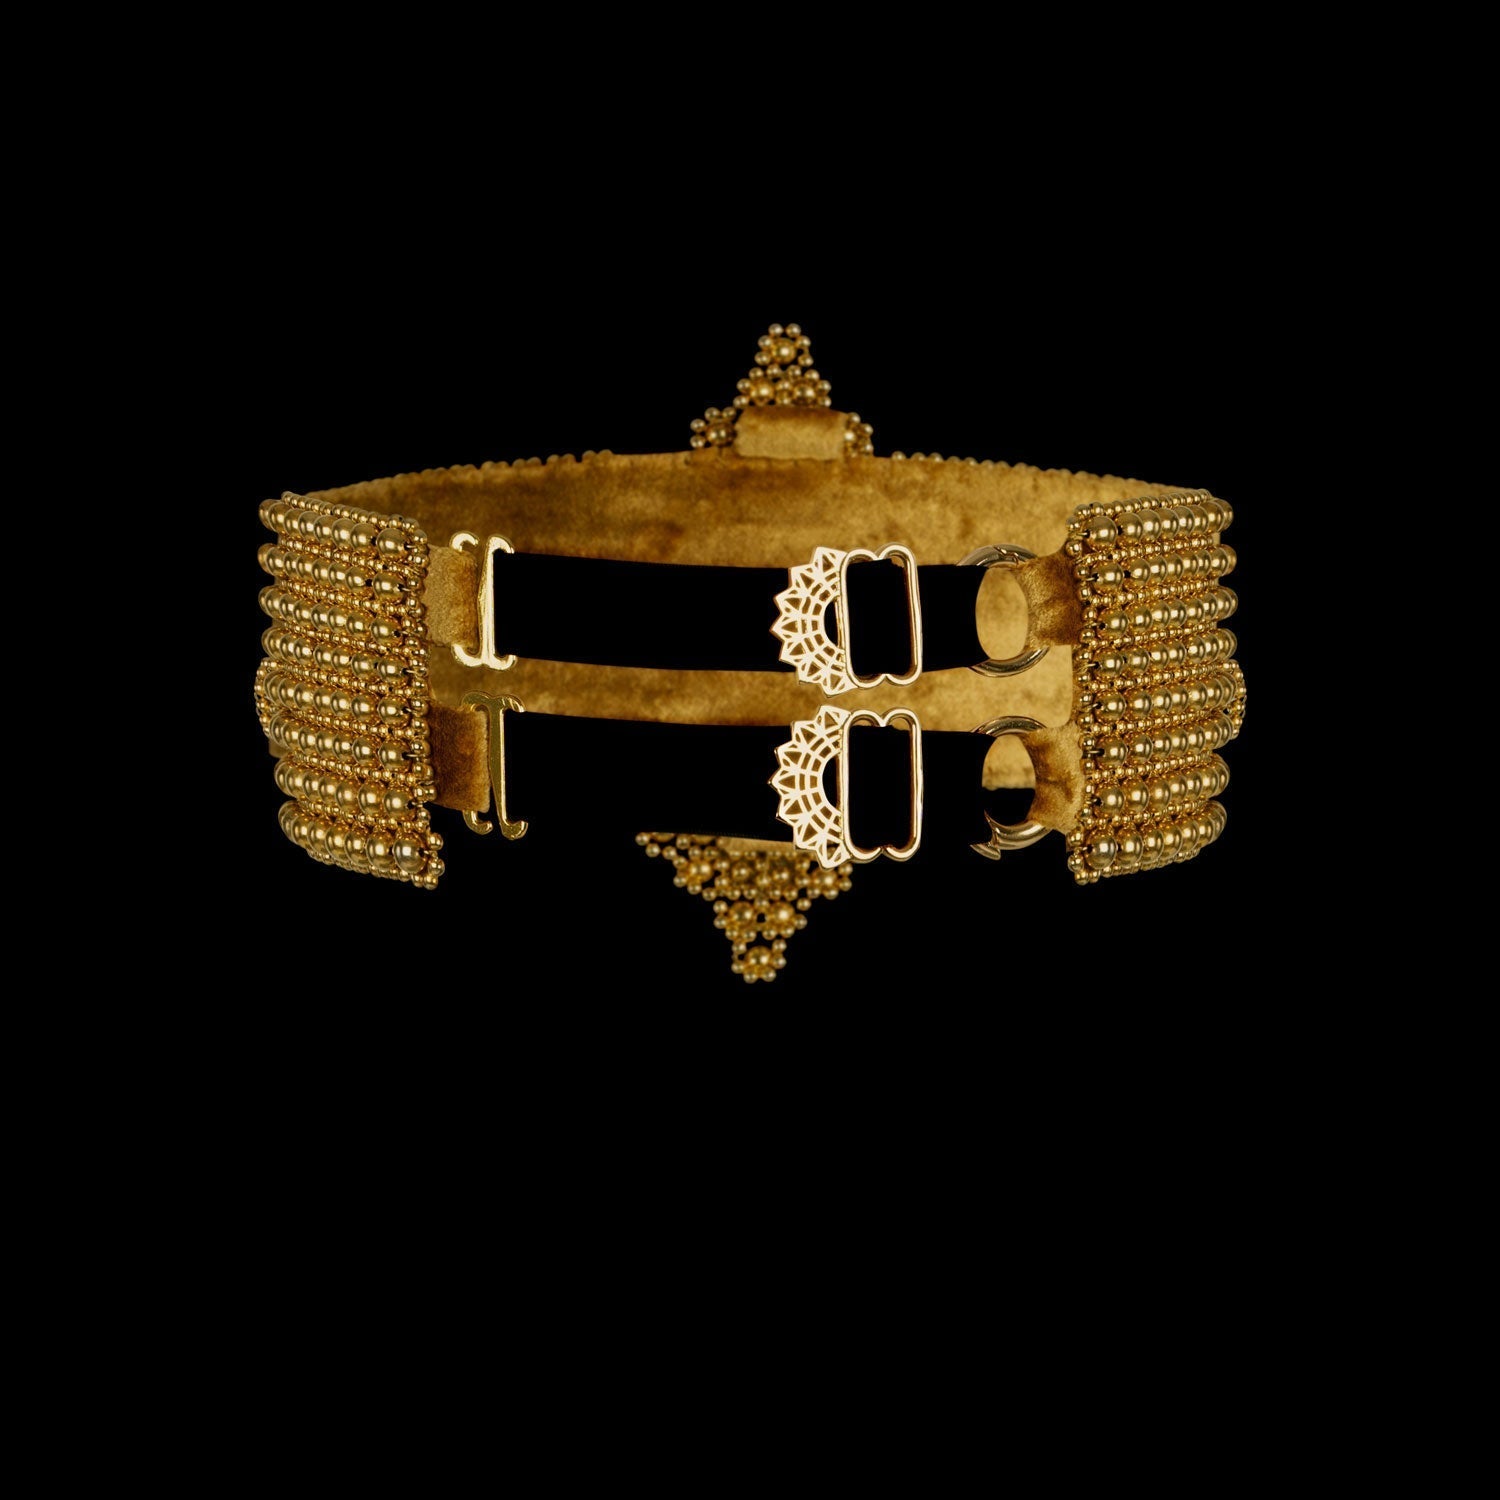 Elohim Modular Garter Band in Gold